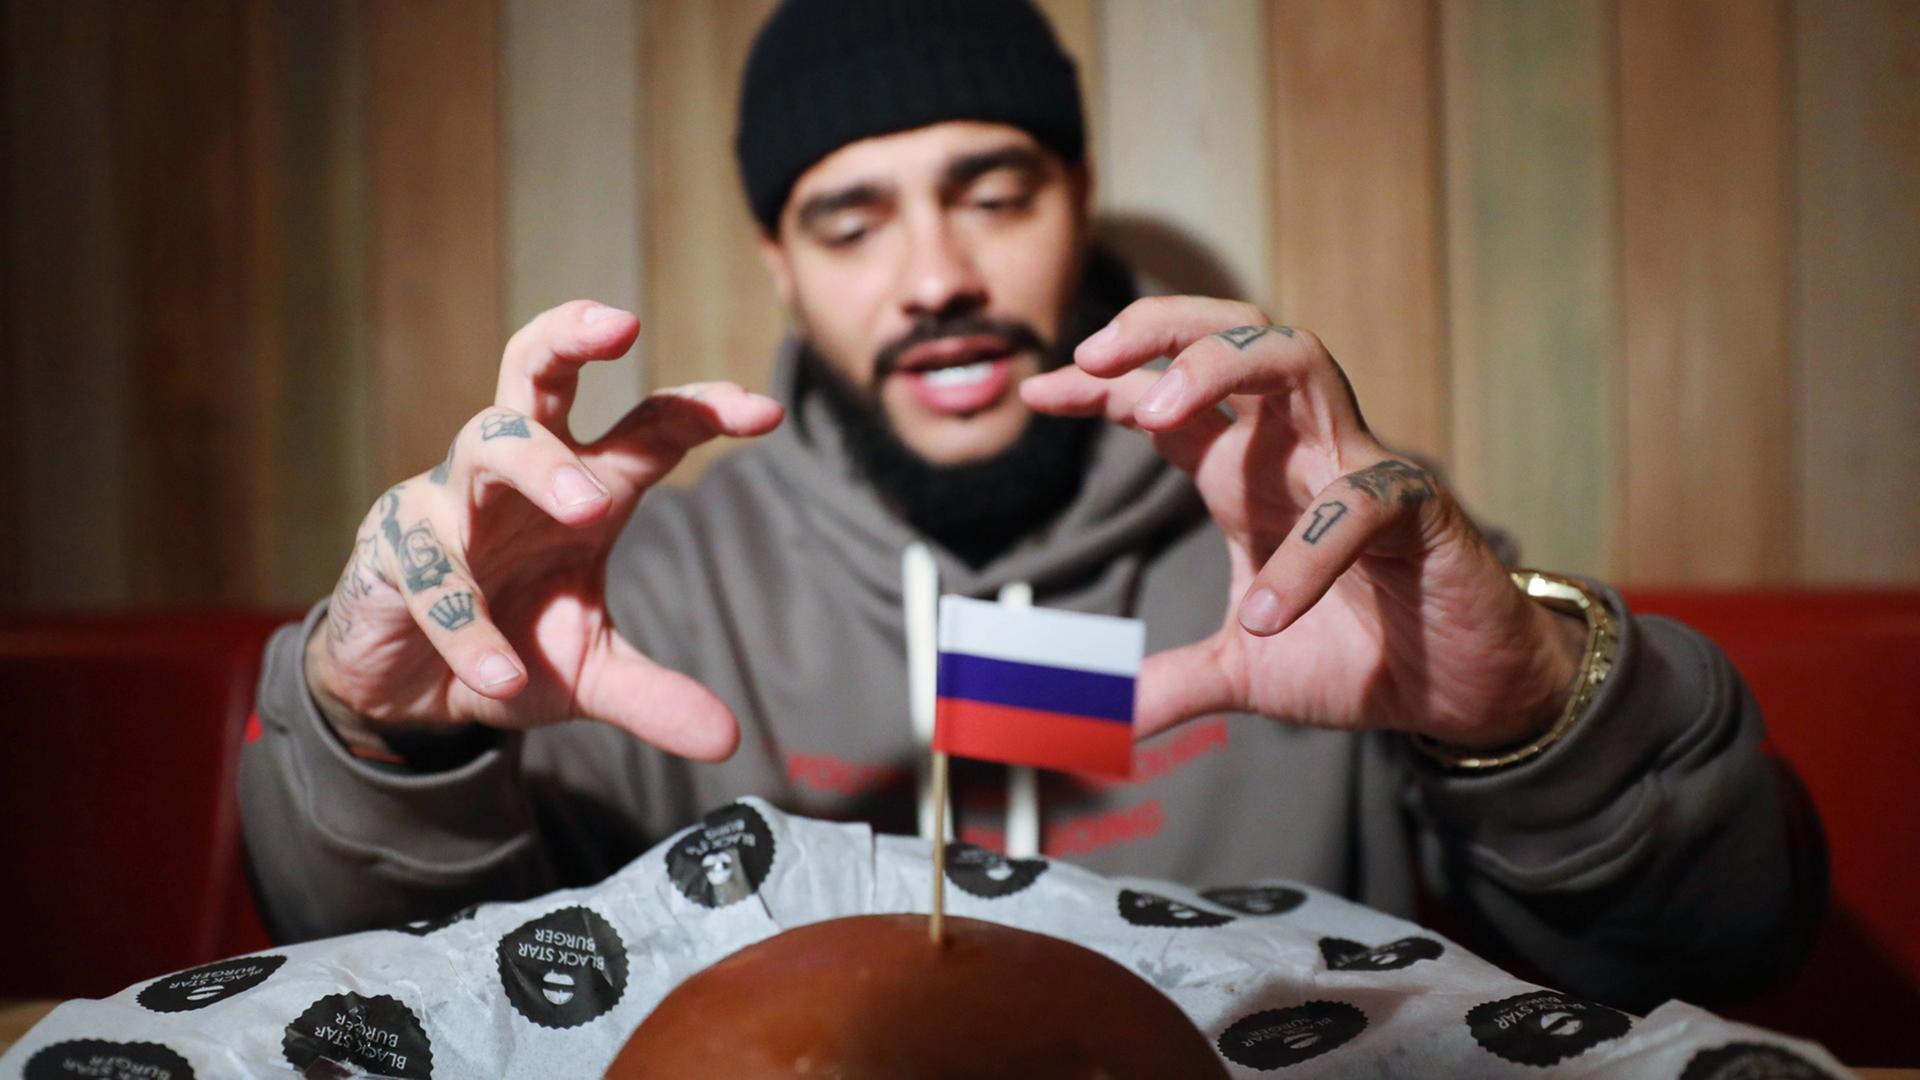 Der Hip-Hop-Sänger Timati verkauft auf seinem Label nicht nur Musik, sondern auch Burger - hier sieht man ihn, wie er nach einem sogenannten "Präsidenten-Burger" mit kleiner Russland-Flagge greift, den es zum Putin-Geburtstag zum Verkauf gab